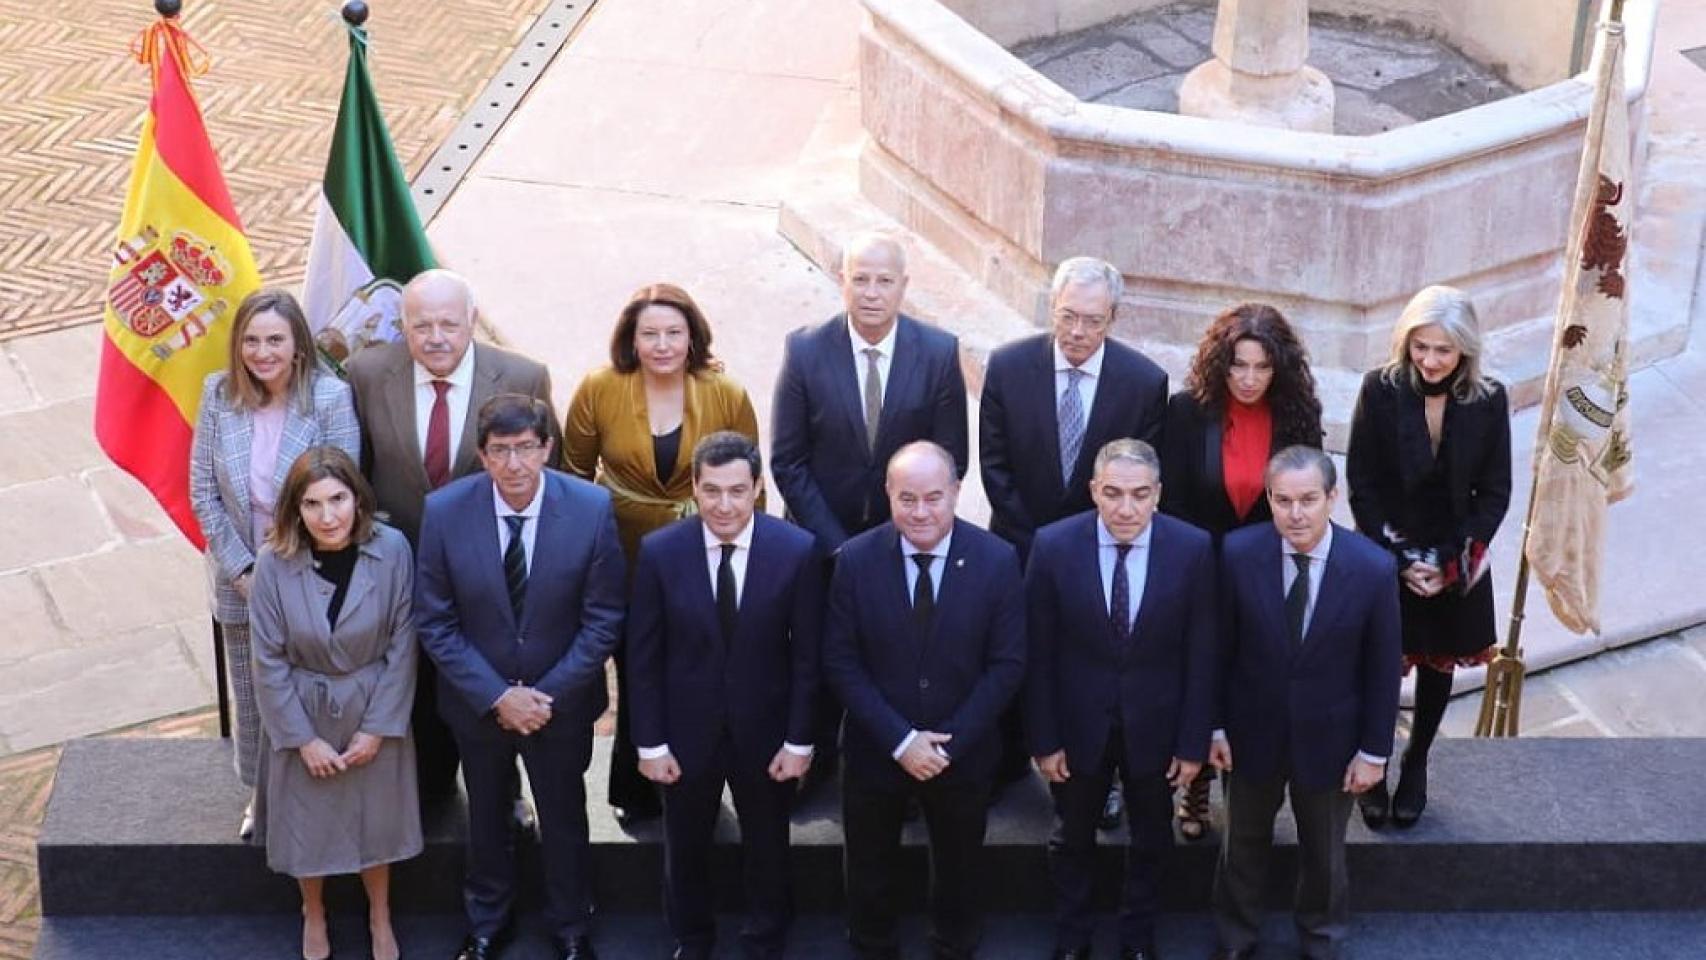 Foto del primer Consejo de Gobierno el 26 de enero de 2019 en Antequera.